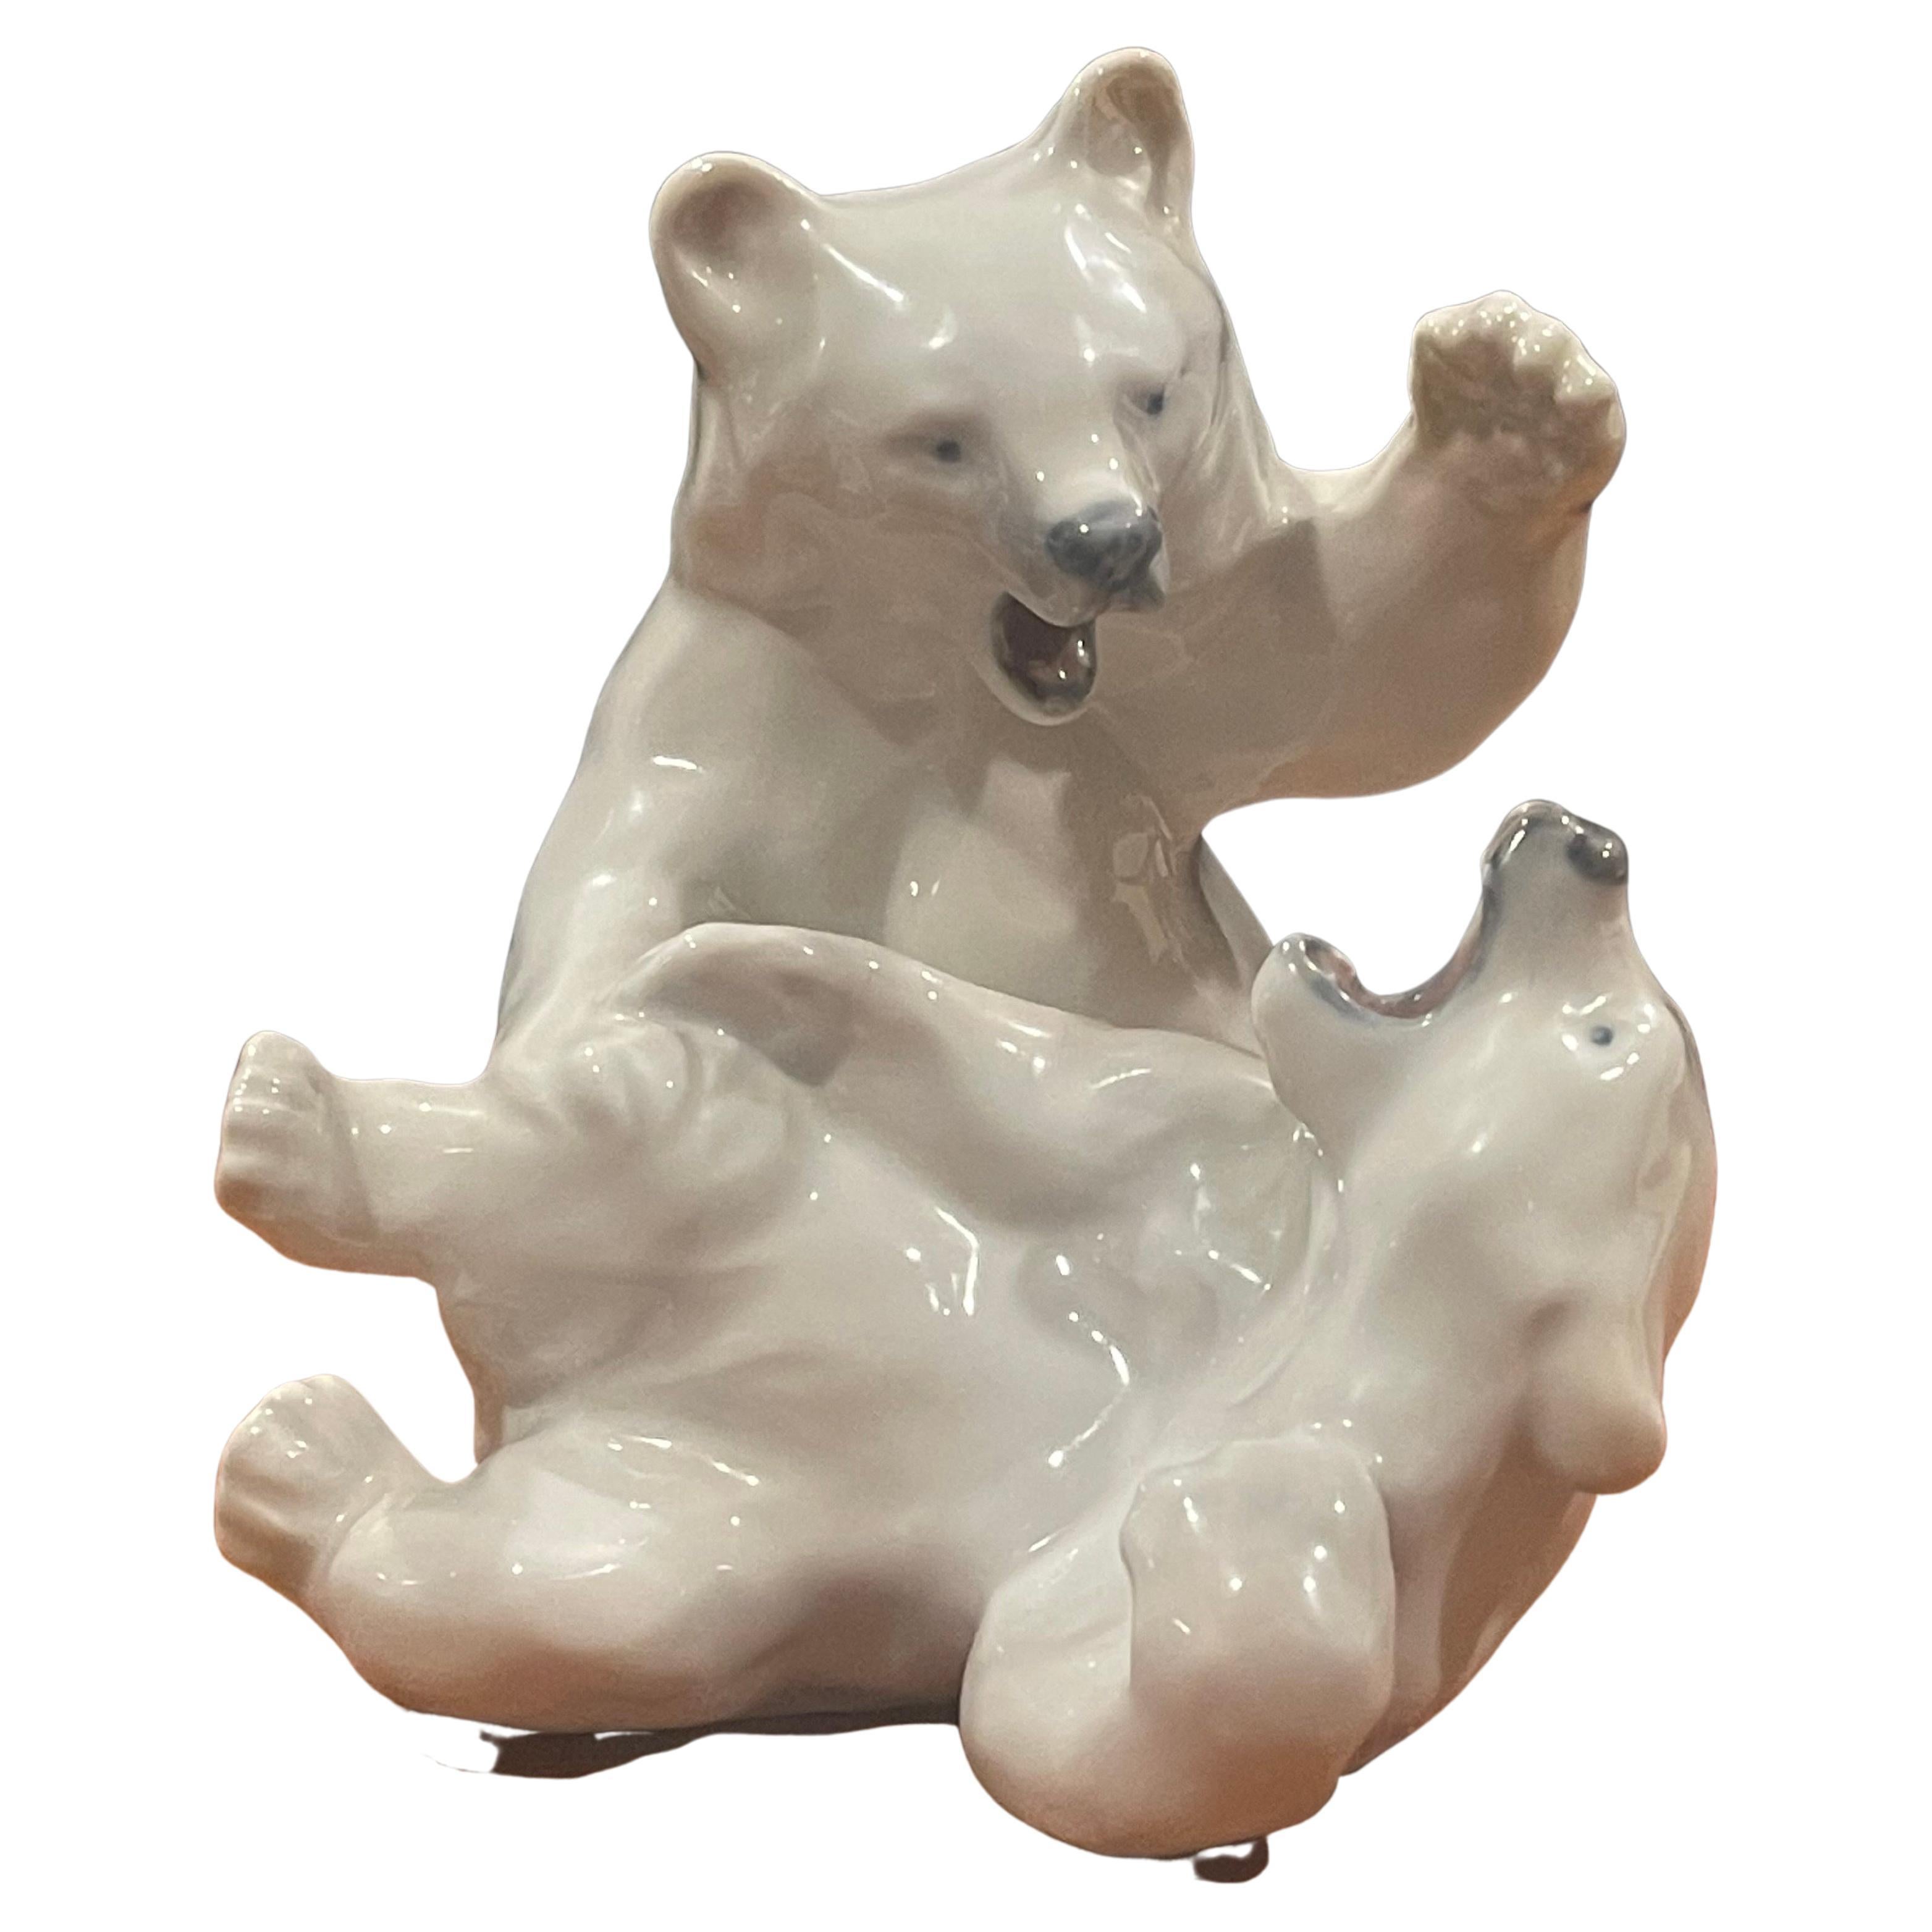 Sculpture vintage de deux pièces en porcelaine représentant des ours polaires en train de se battre, réalisée par Royal Copenhagen, vers 1930. La pièce est en très bon état, sans éclats ni fissures, et mesure 9,5 